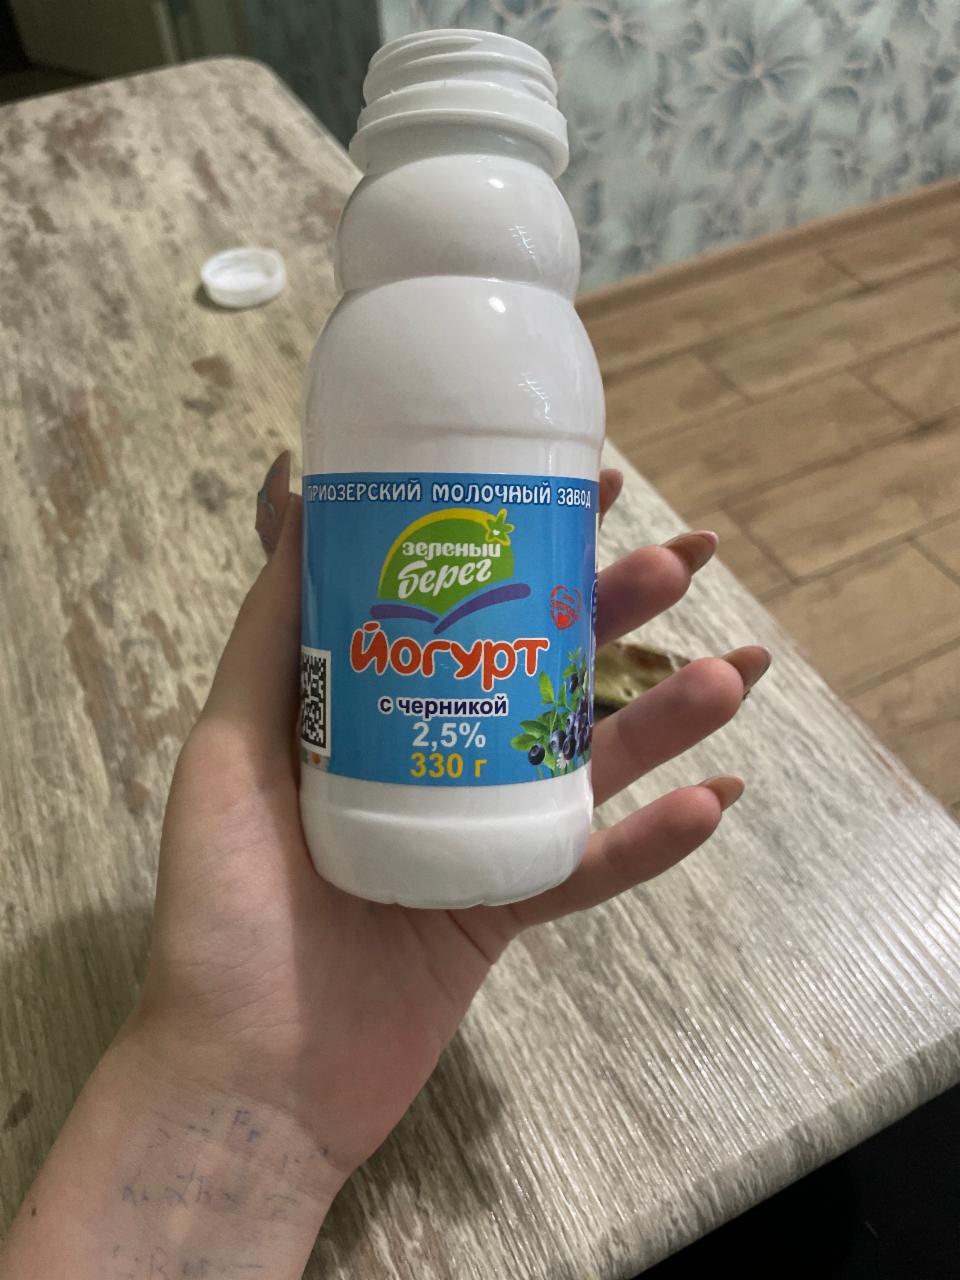 Фото - Йогурт с черникой 2,5% Зеленый берег